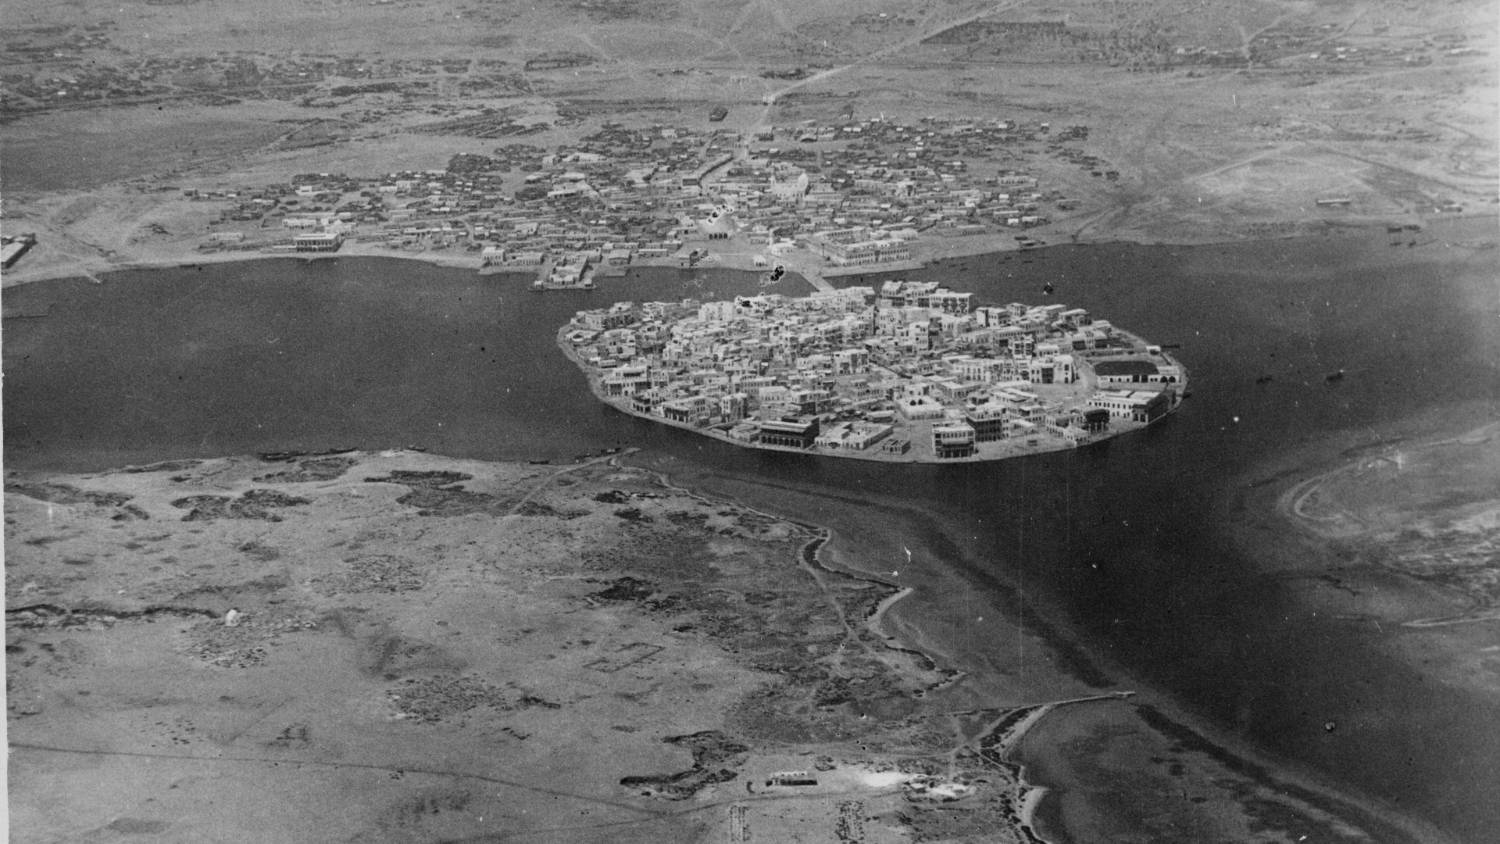 L’île de Suakin photographiée vers le début du XXe siècle (Collection Greenlaw/Société de recherche archéologique du Soudan)